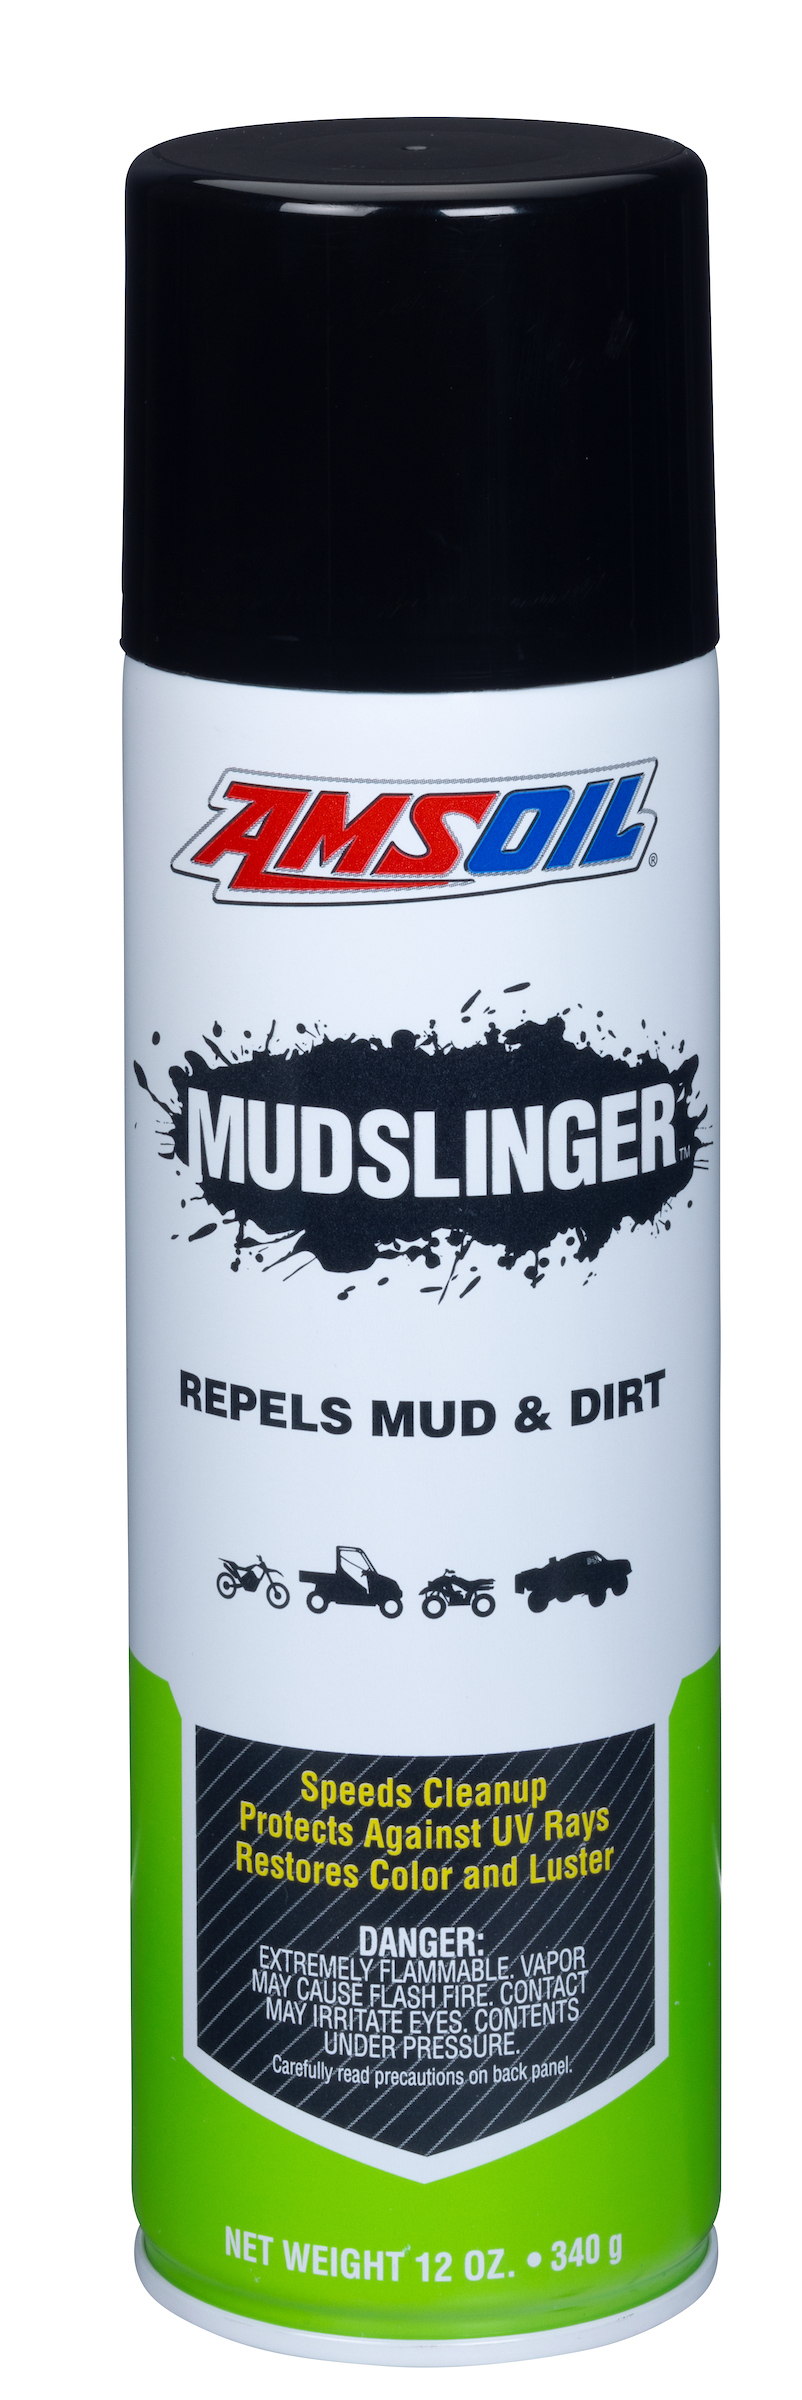 AMSOIL Mudslinger - Repels Mud and Dirt